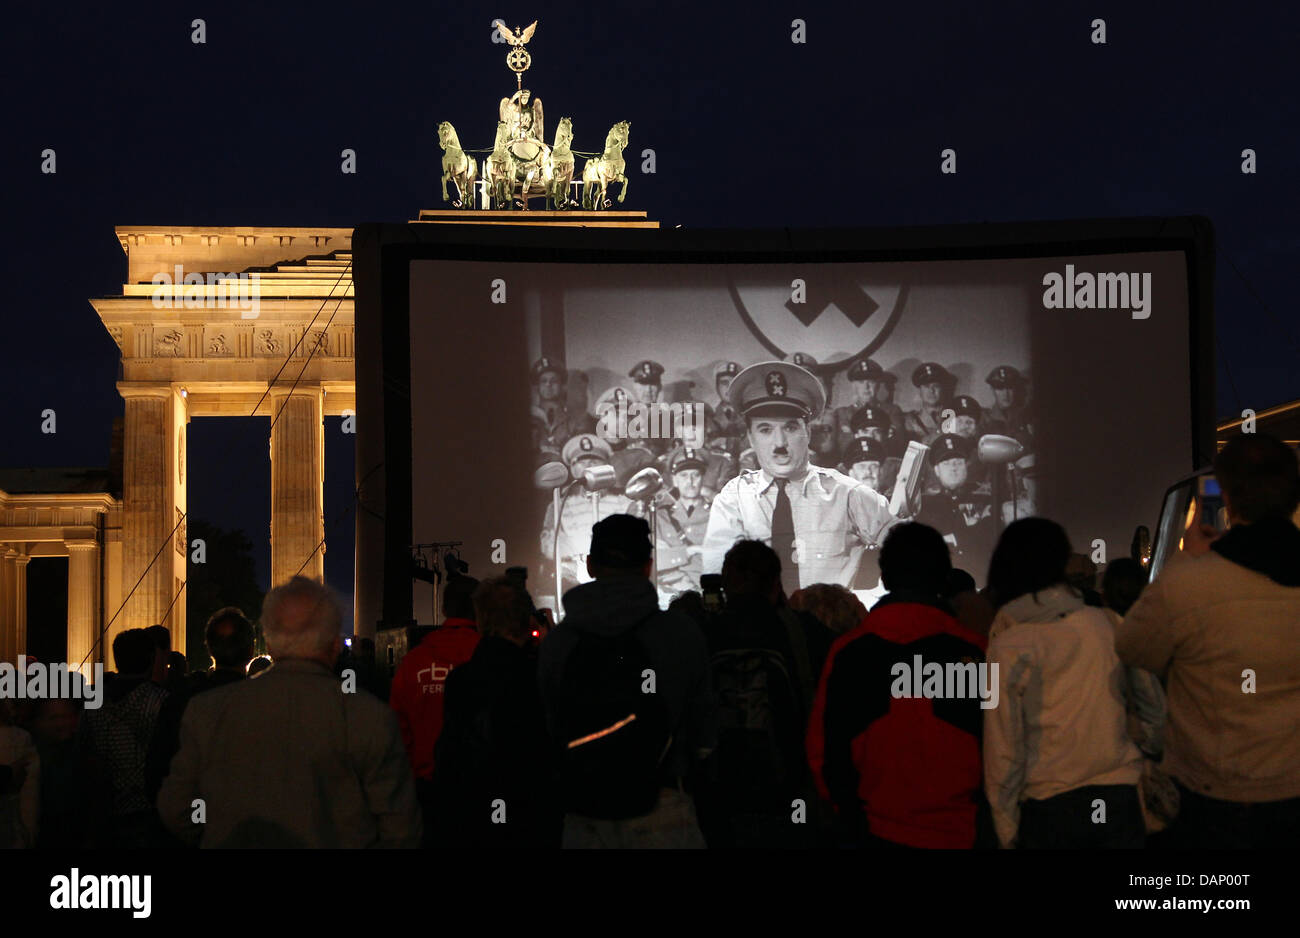 Menschen besuchen dem Screening von Chaplins "Den großen Diktator" am Brandenburger Tor in Berlin, Deutschland, 15. Juni 2011. Das Stummfilm-Festival 'Chaplin komplette' eröffnet mit dem Screening auf das Wahrzeichen der Stadt. Foto: Wolfgang Kumm Stockfoto